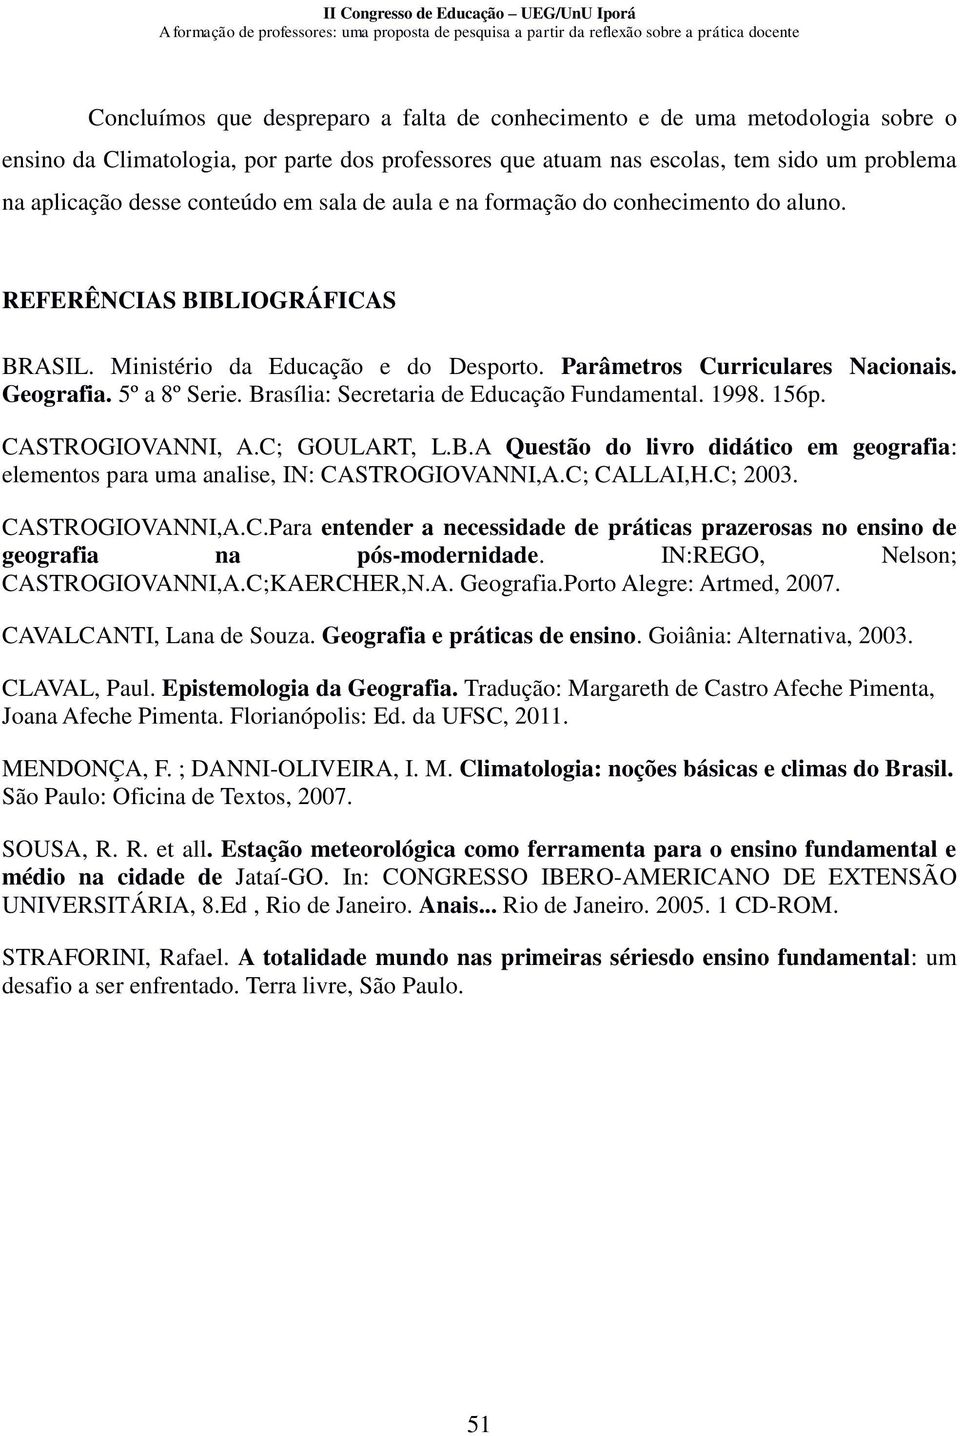 Brasília: Secretaria de Educação Fundamental. 1998. 156p. CASTROGIOVANNI, A.C; GOULART, L.B.A Questão do livro didático em geografia: elementos para uma analise, IN: CASTROGIOVANNI,A.C; CALLAI,H.